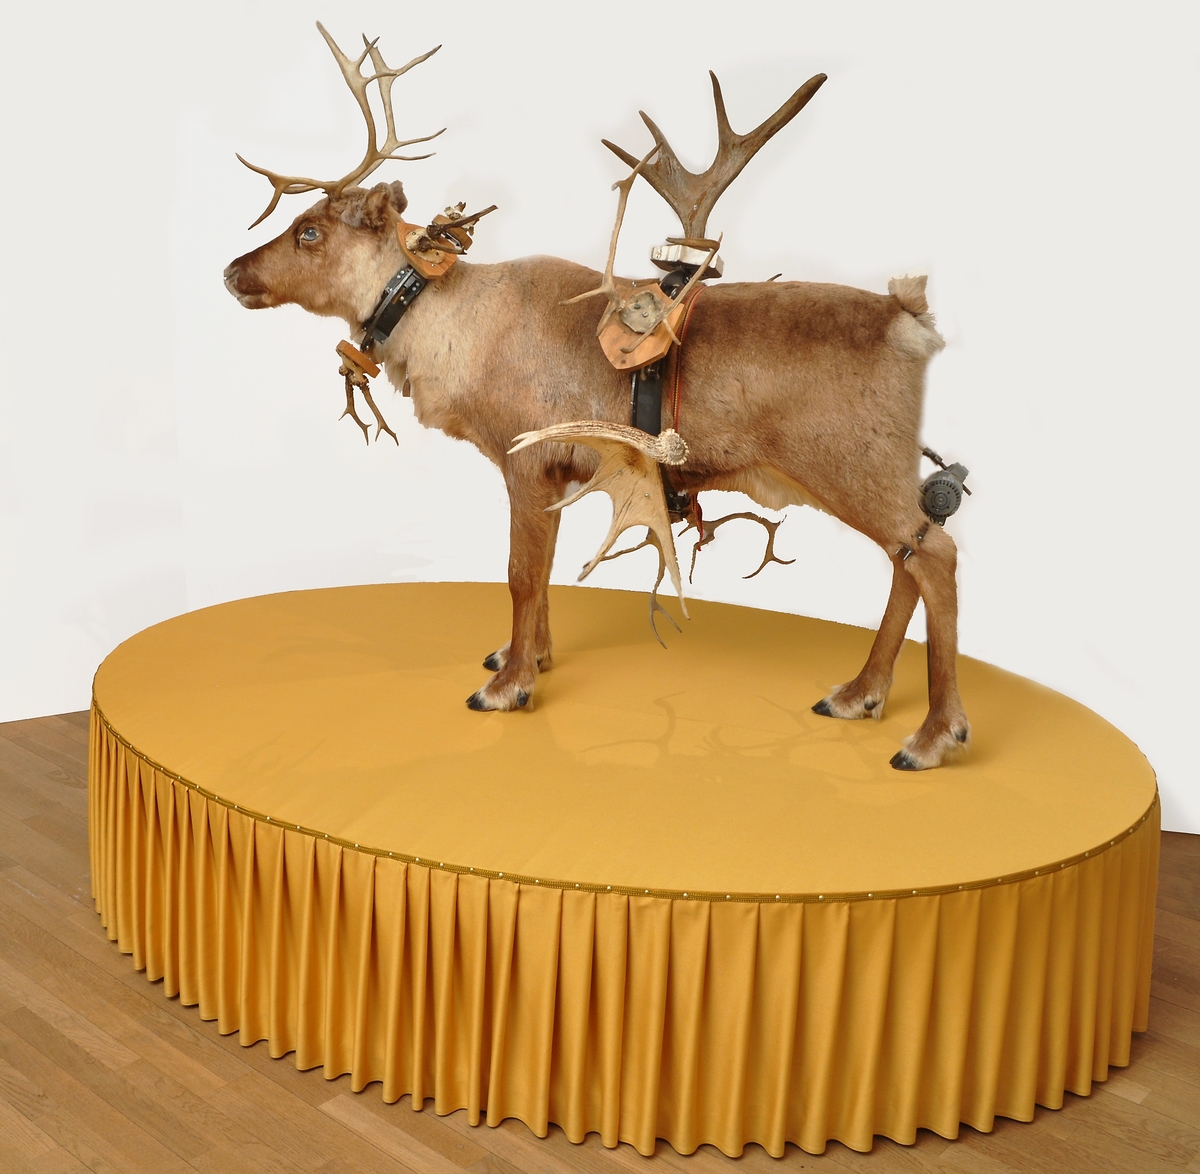 Skulptur i form av uppstoppad ren med horn från hjortdjur runt kroppen. Försedd med eldriven motor. Placerad på ett 50 cm högt ovalt podium av spånplatta, klädd med guldockrafärgat tyg. Utförd år 2002 av konstnär Peter Johansson, född 1964 i Sälen.